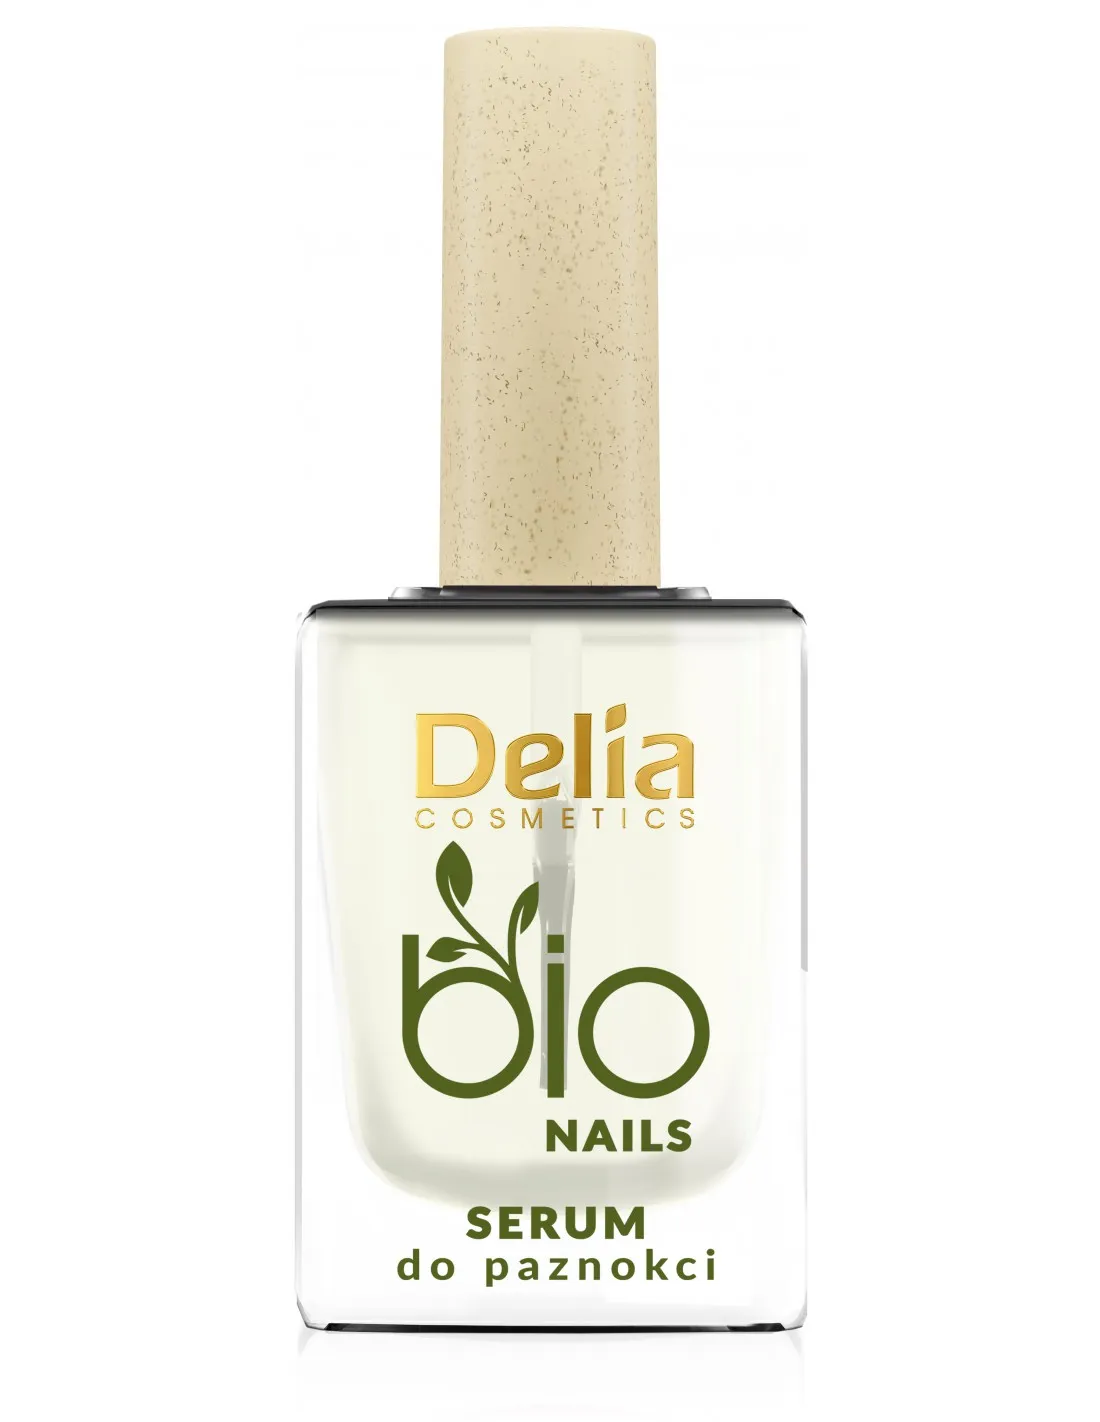 Delia Bio Nails wzmacniające serum do paznokci z kolagenem, 11 ml 